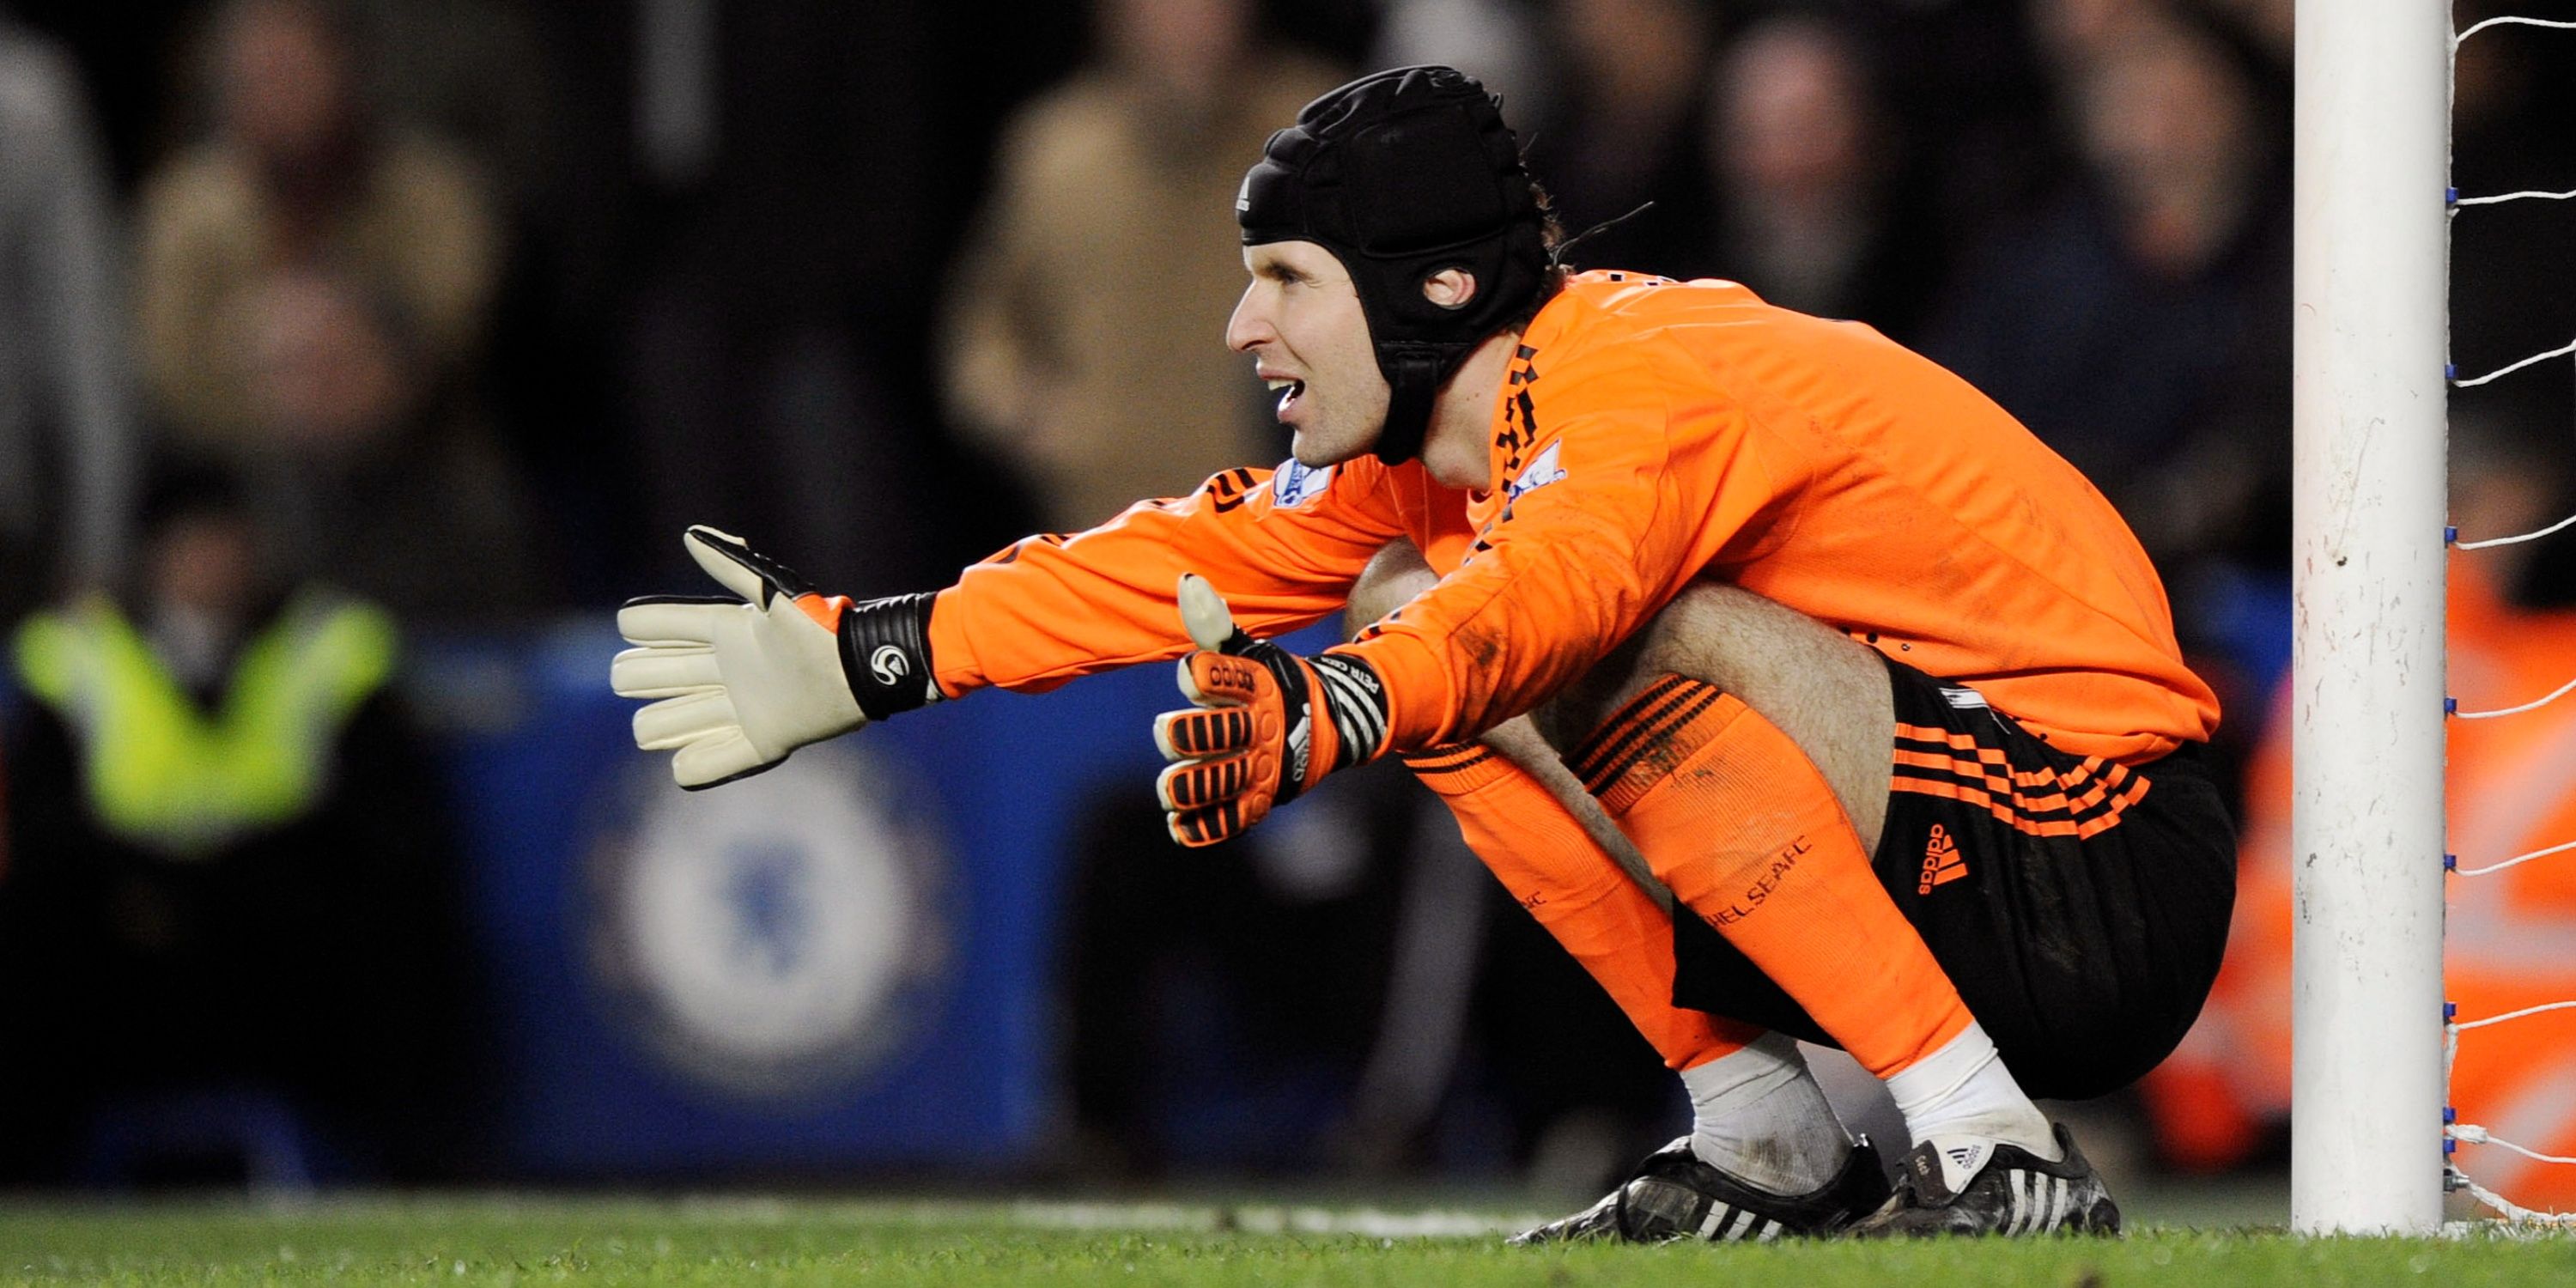 Chelsea's Petr Cech surveys the action. 